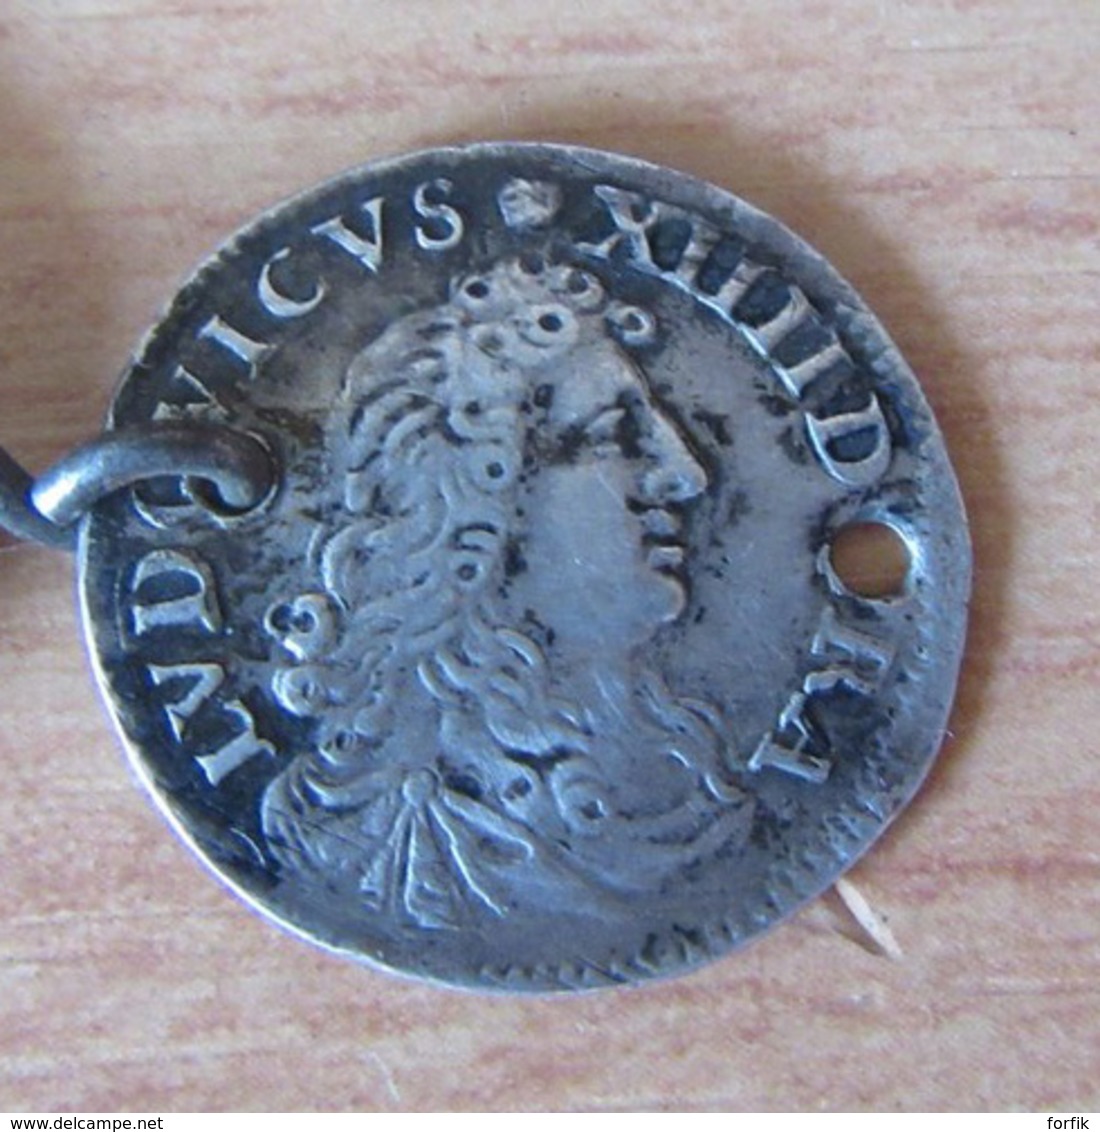 France - Chaîne de montre en métal composée de 5 Monnaies et jetons dont Louis XIV 4 sols Aux Traitants 1676 D